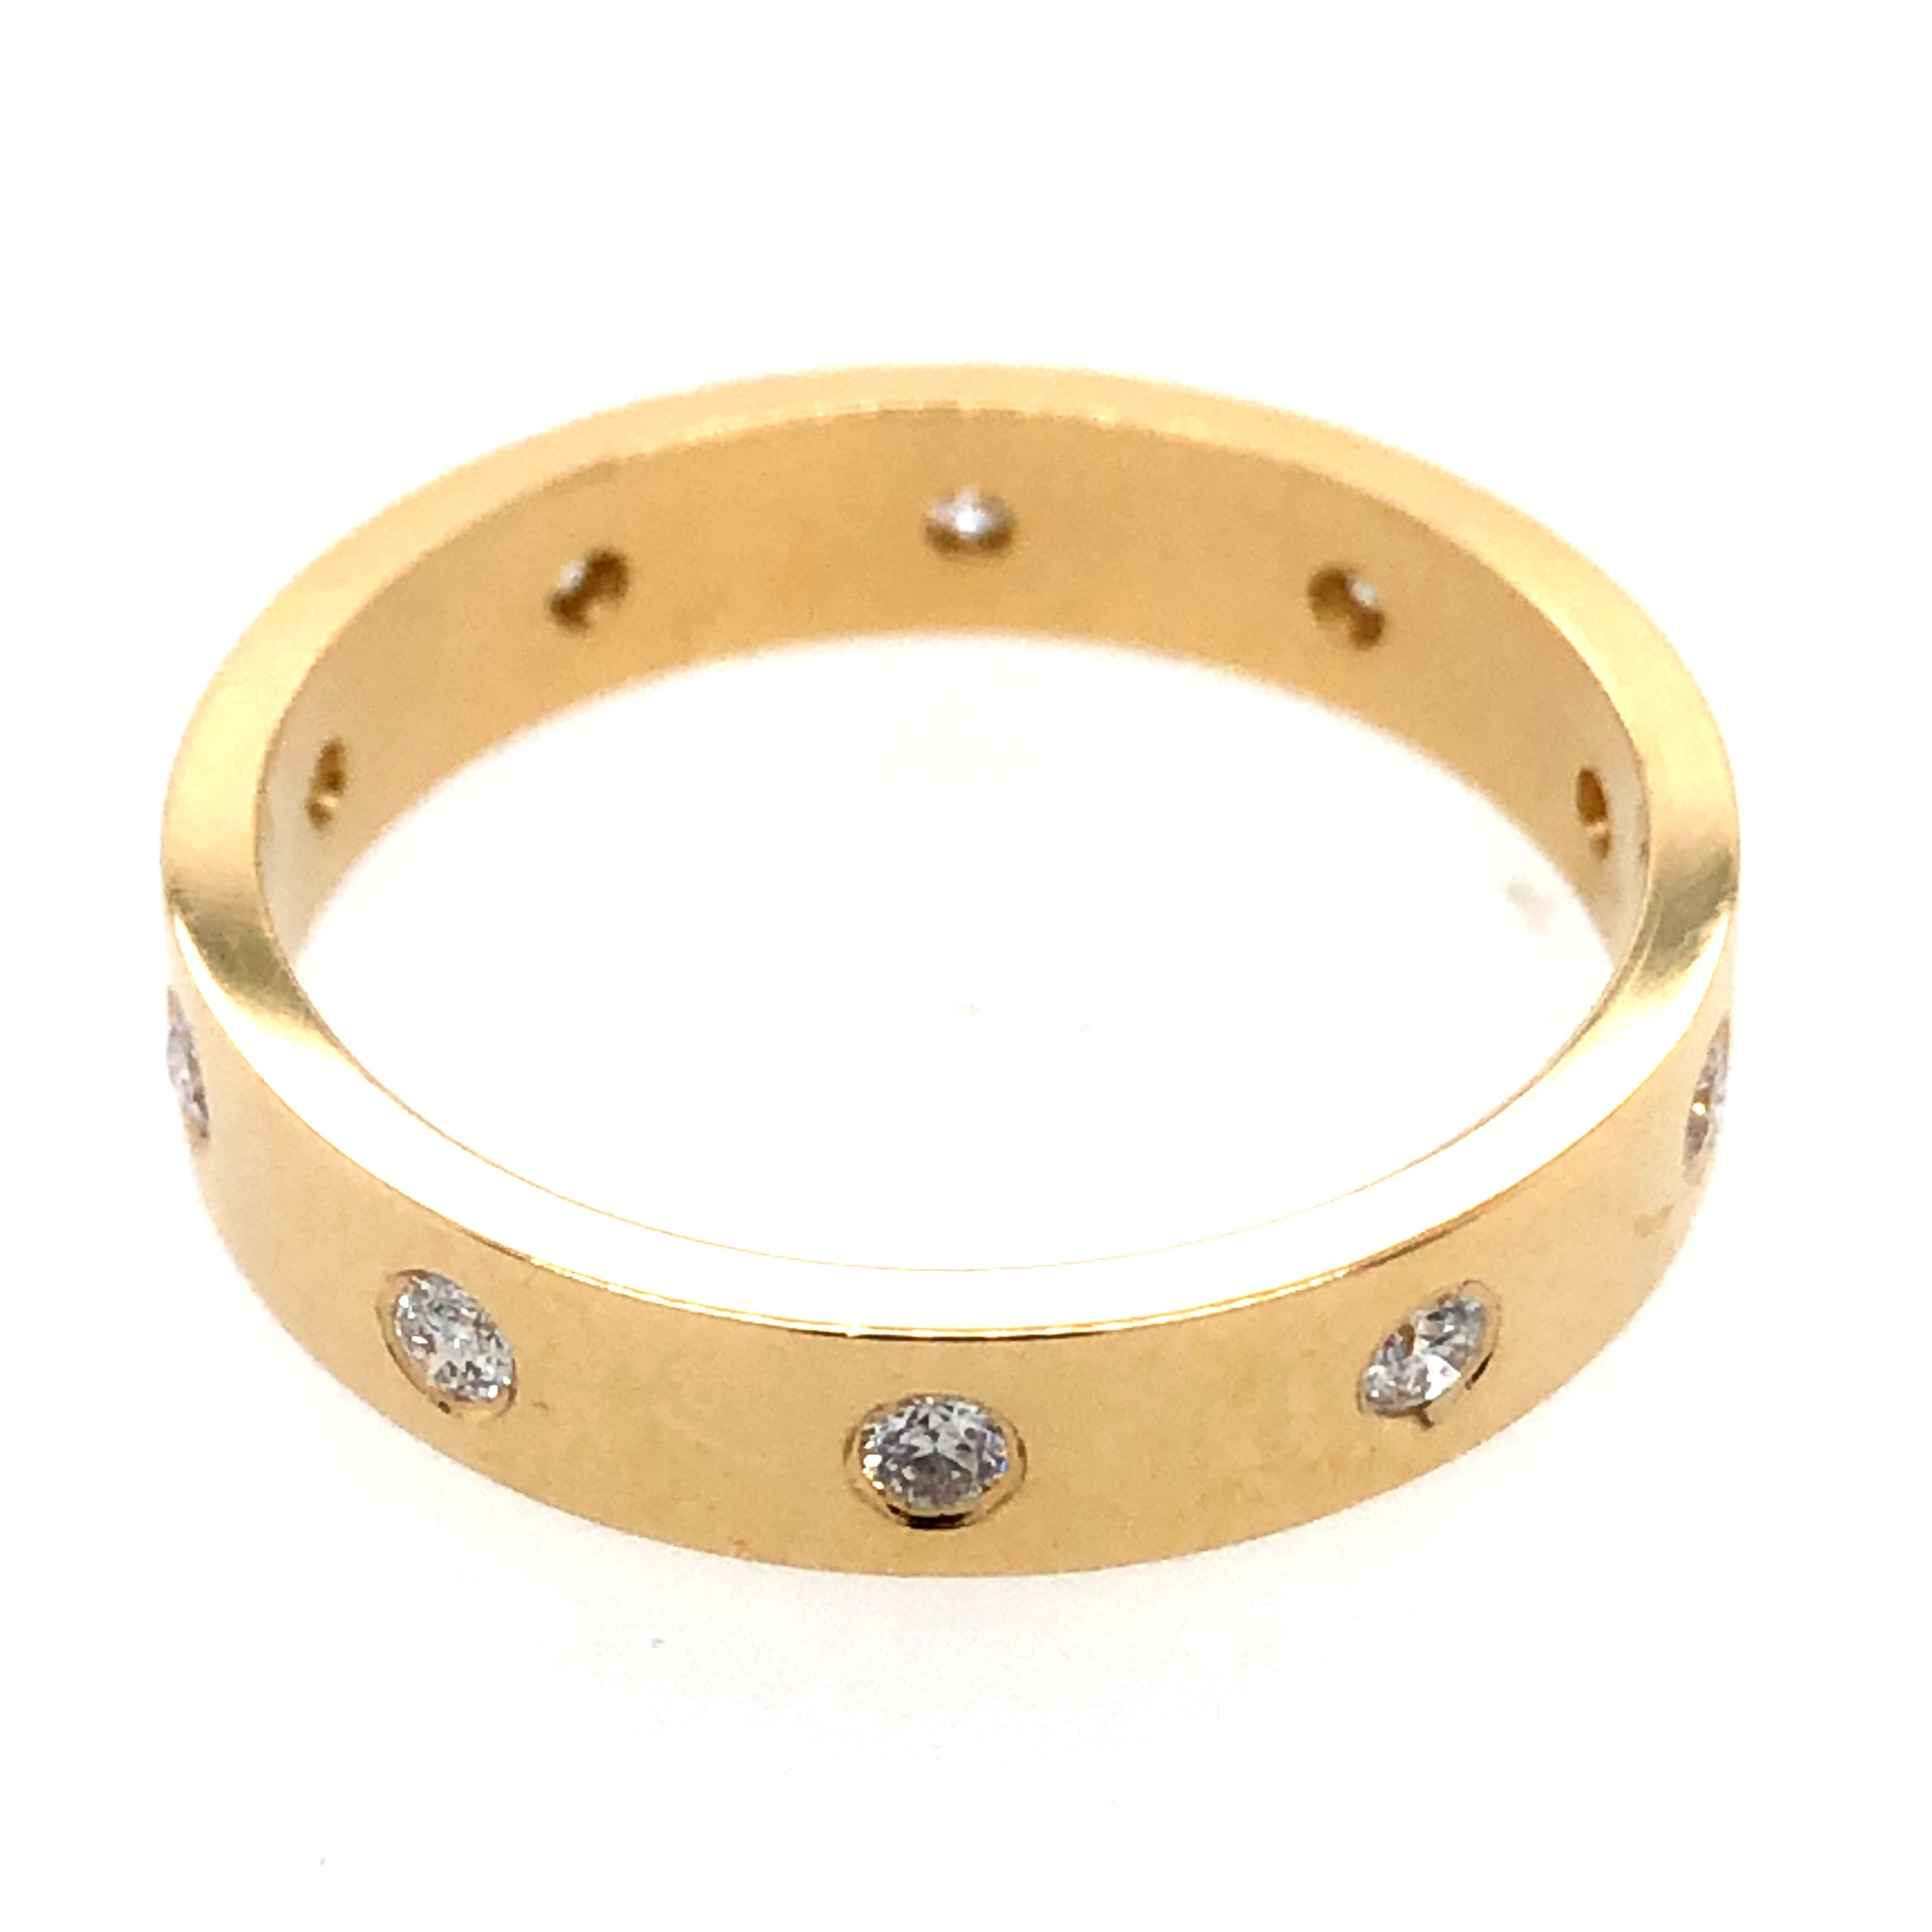 Stackable Diamond Fashion Ring - Diamond Fashion Rings - Womens